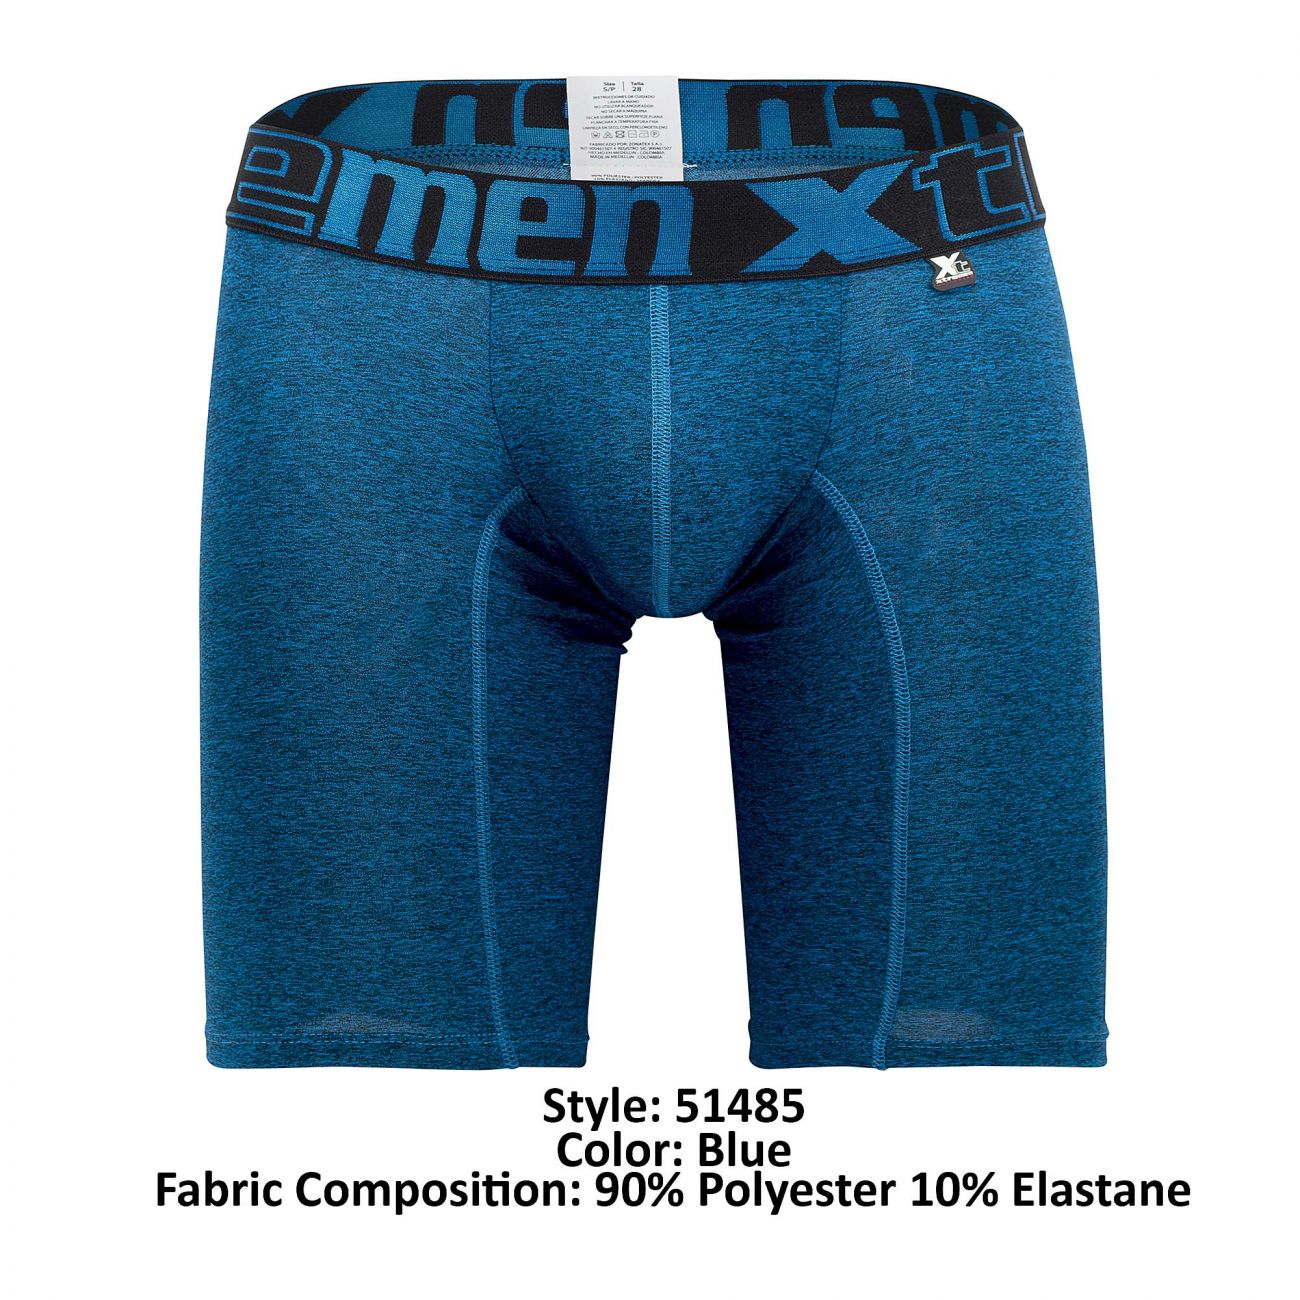 Xtremen 51485 Microfiber Athletic Boxer Briefs Blue